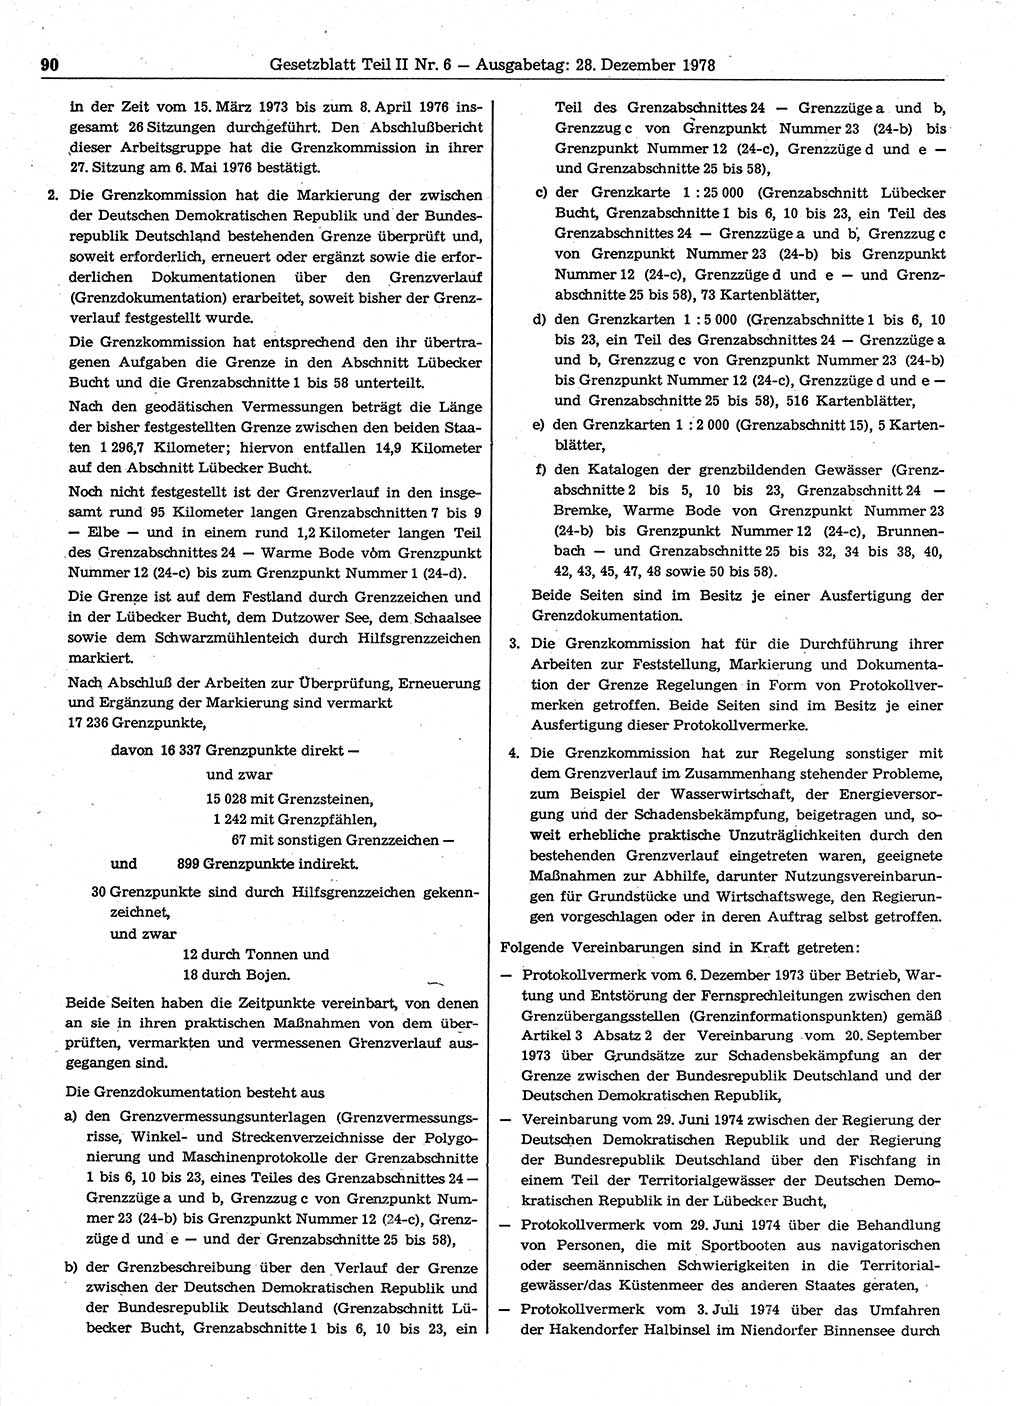 Gesetzblatt (GBl.) der Deutschen Demokratischen Republik (DDR) Teil ⅠⅠ 1978, Seite 90 (GBl. DDR ⅠⅠ 1978, S. 90)